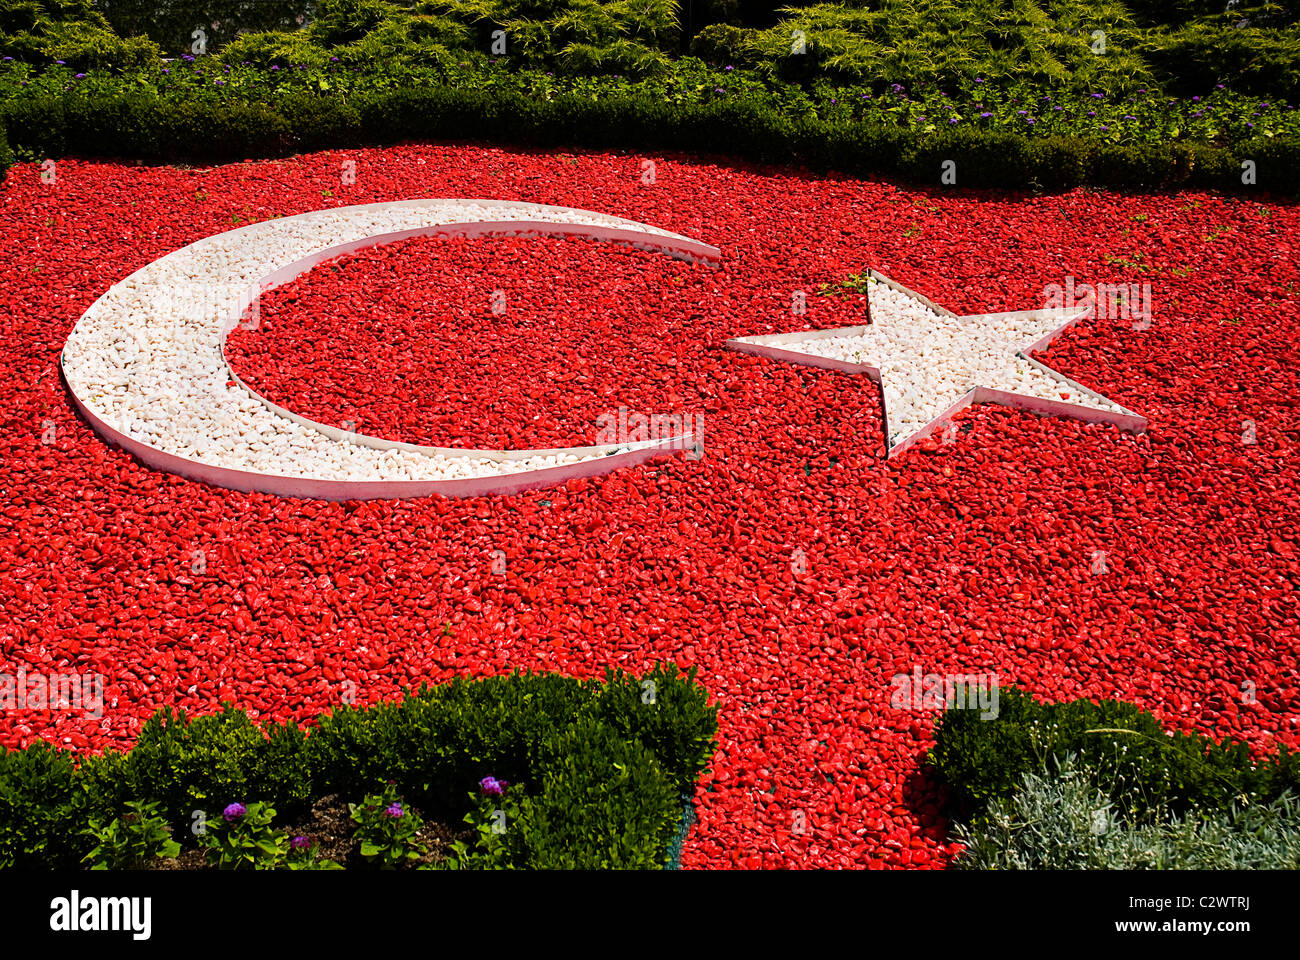 Turquie Ankara Anitkabir mausolée du fondateur de la République turque Mustafa Kemal Atatürk. Drapeau turc représenté à cailloux Banque D'Images